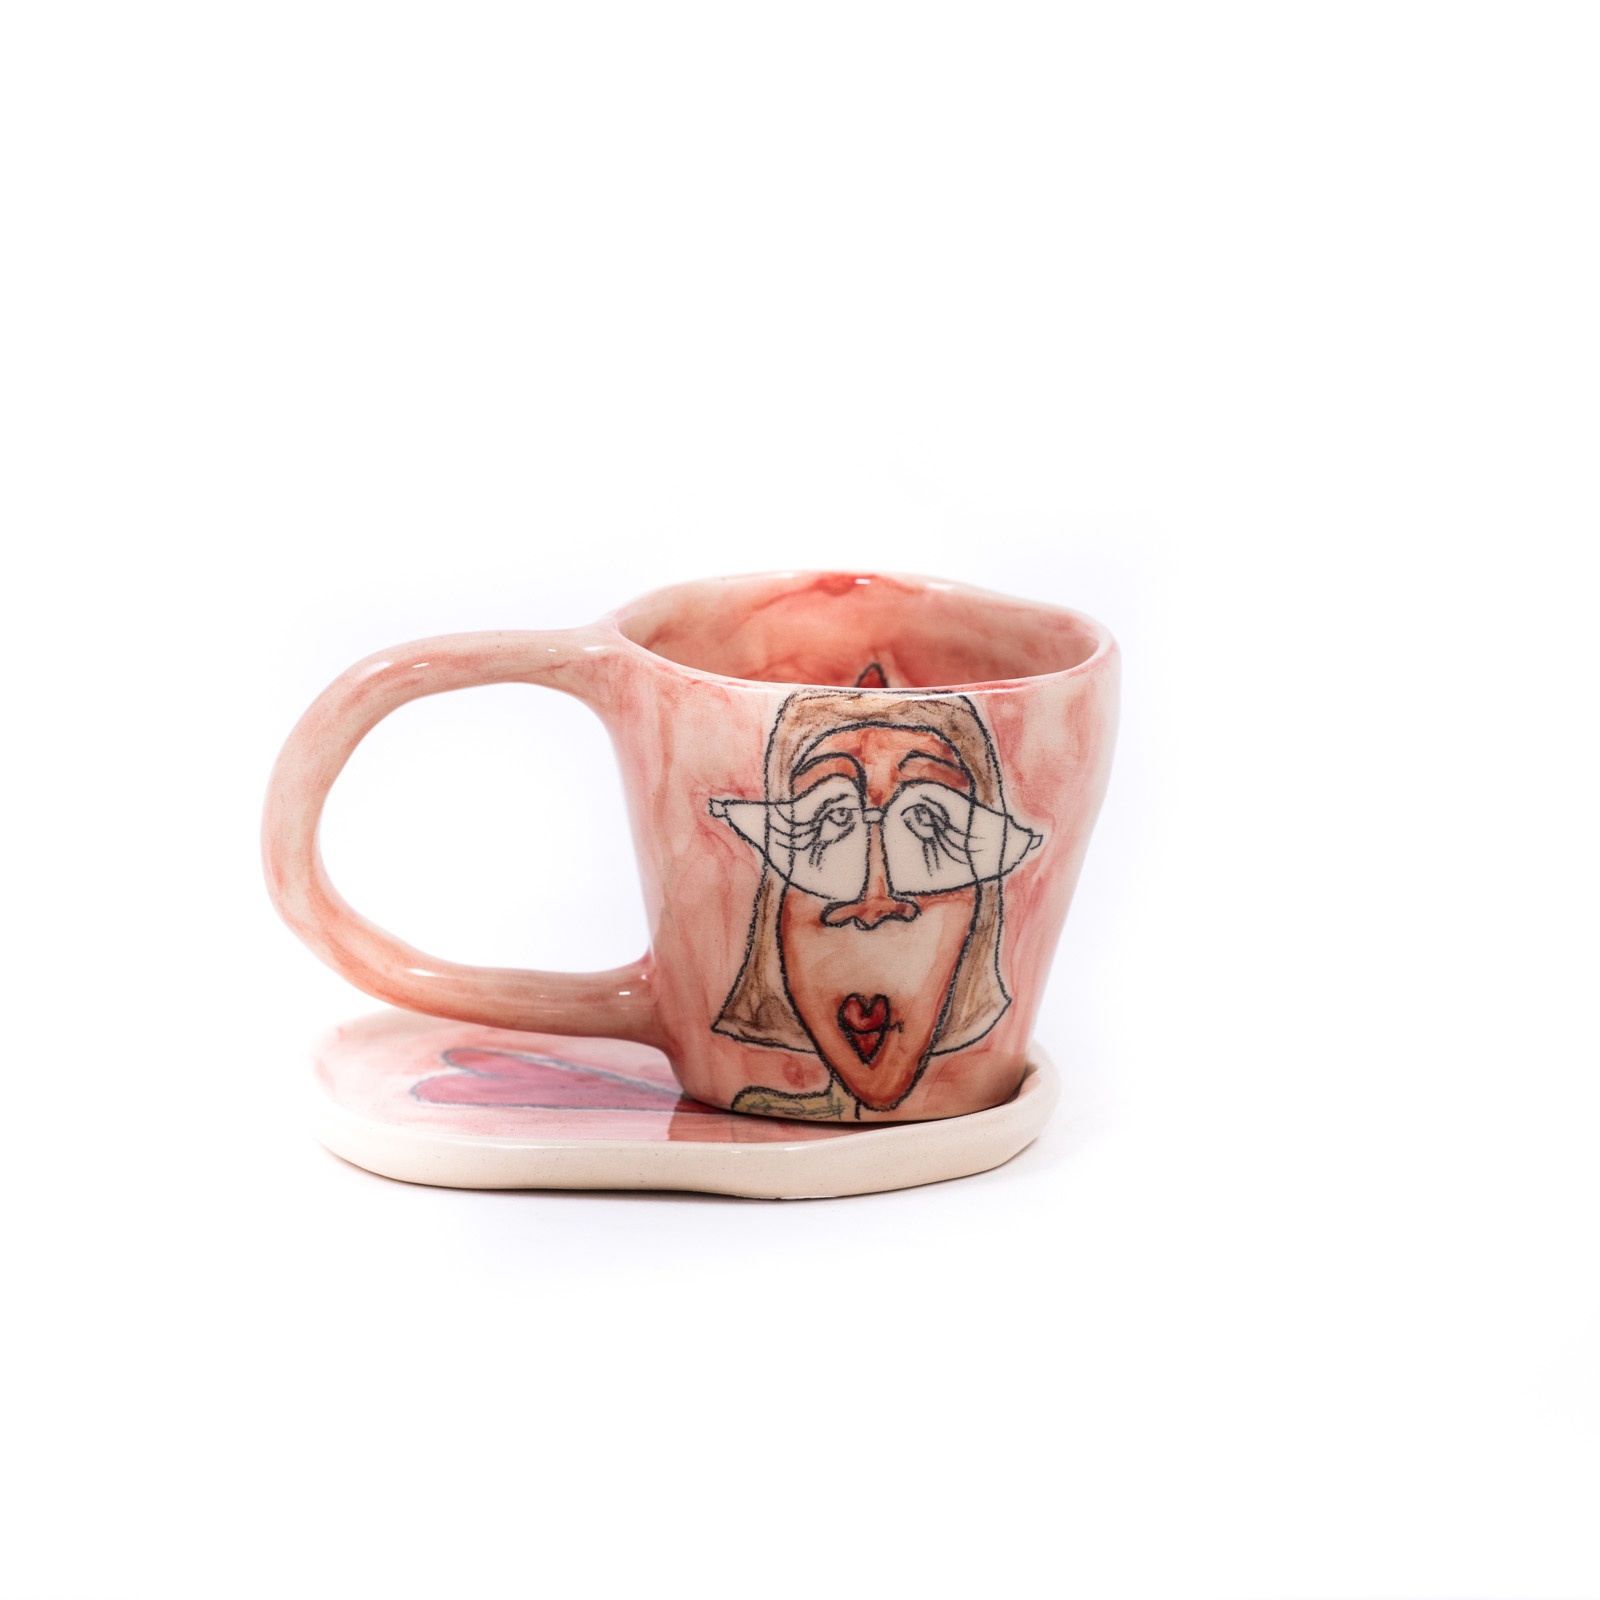 Ceramic espresso cup with saucer - Miss Art - Eugenia Gerontara